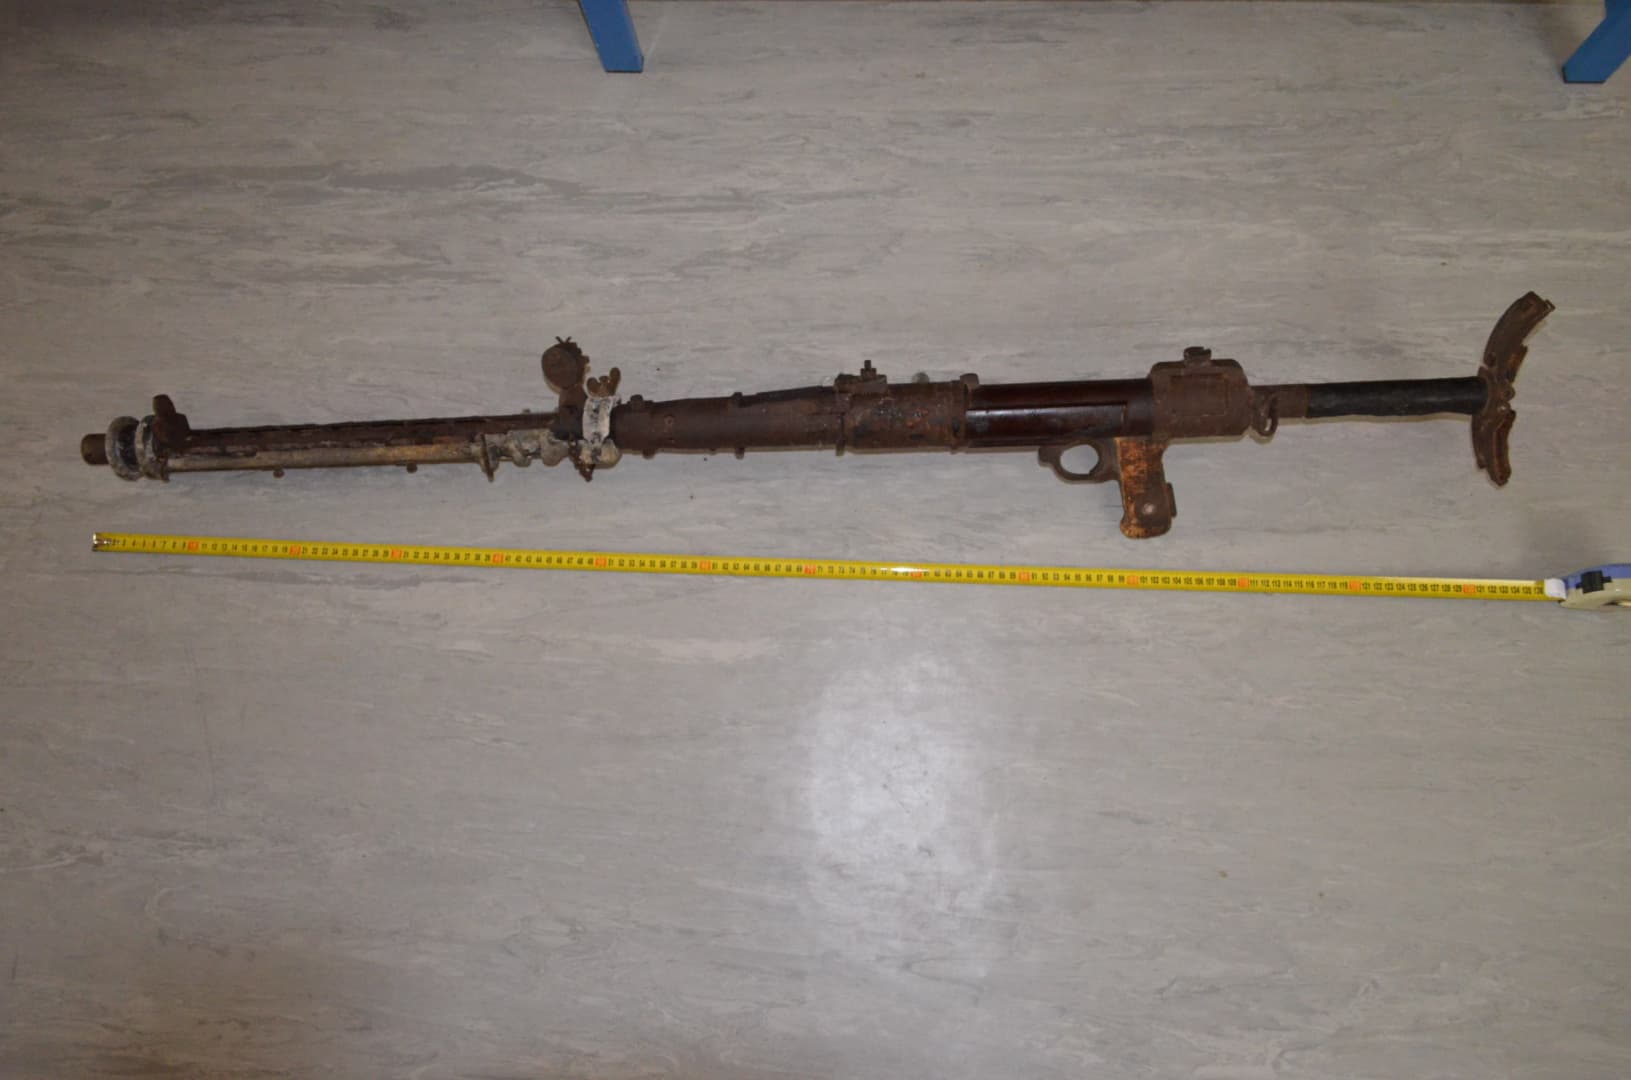 Második világháborús géppuskát találtak a kéménybe falazva